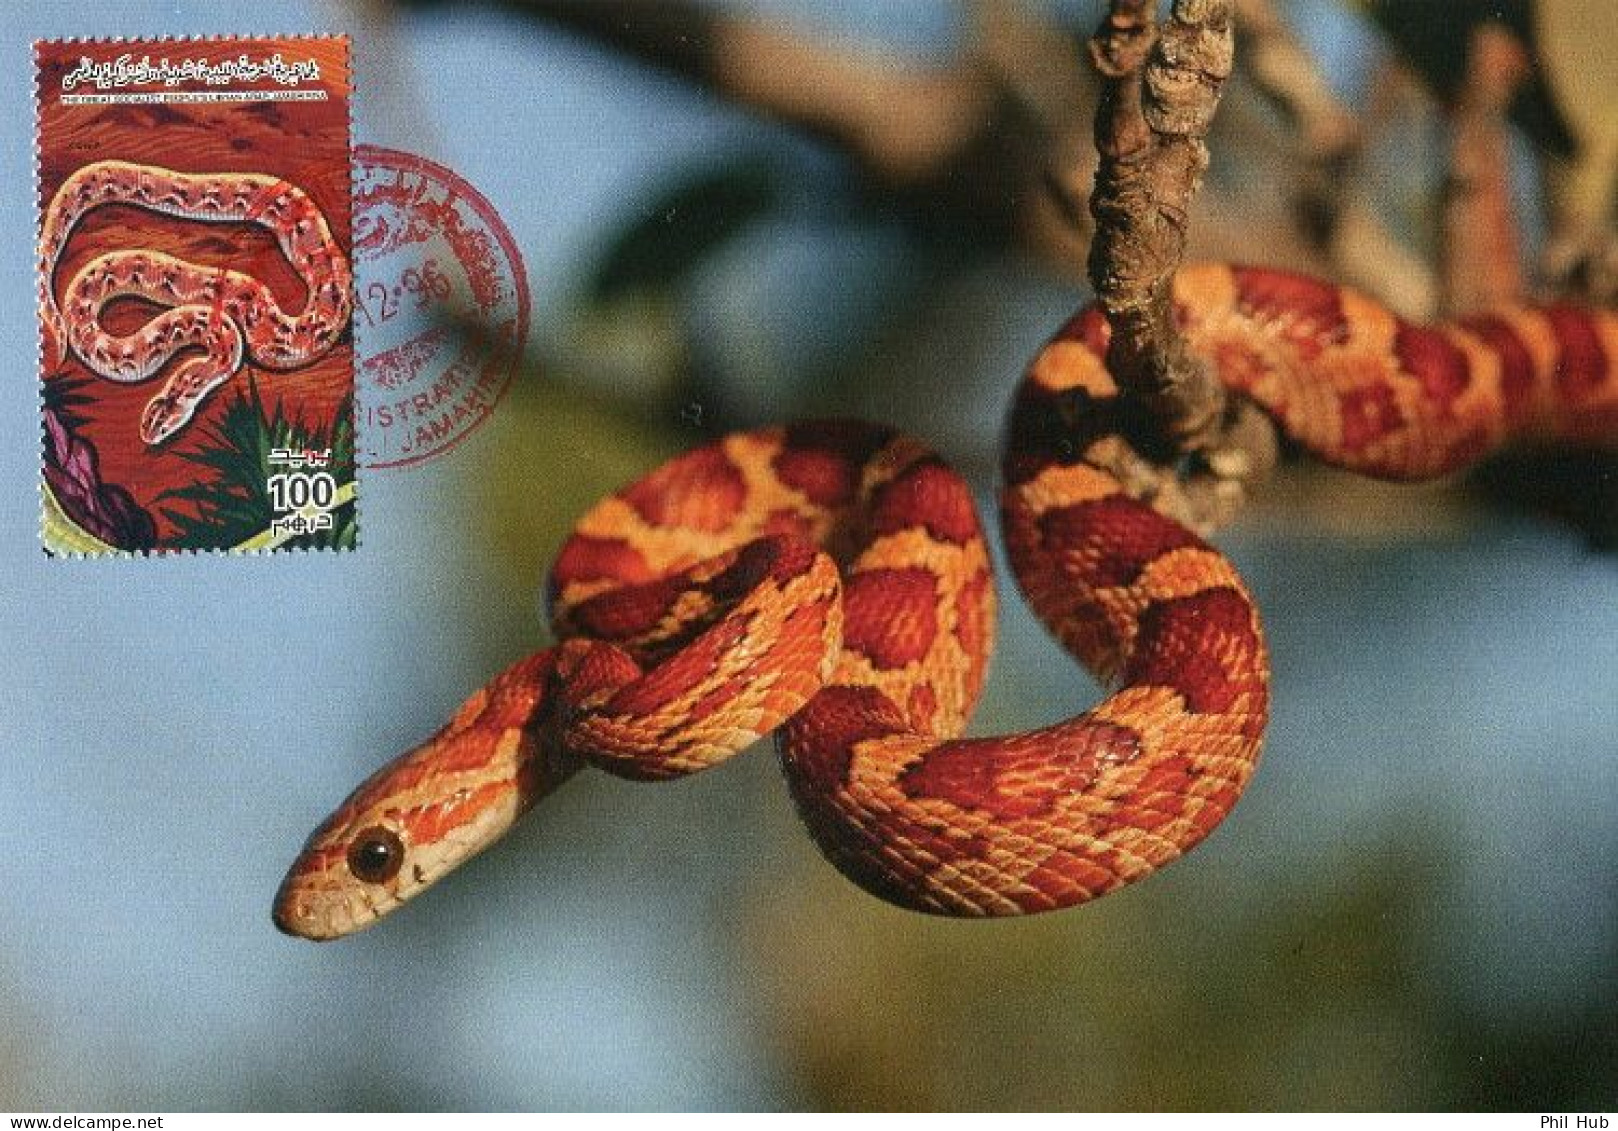 LIBYA 1996 Reptiles Snakes "Elaphe Guttata" (maximum-card) #10 - Serpents